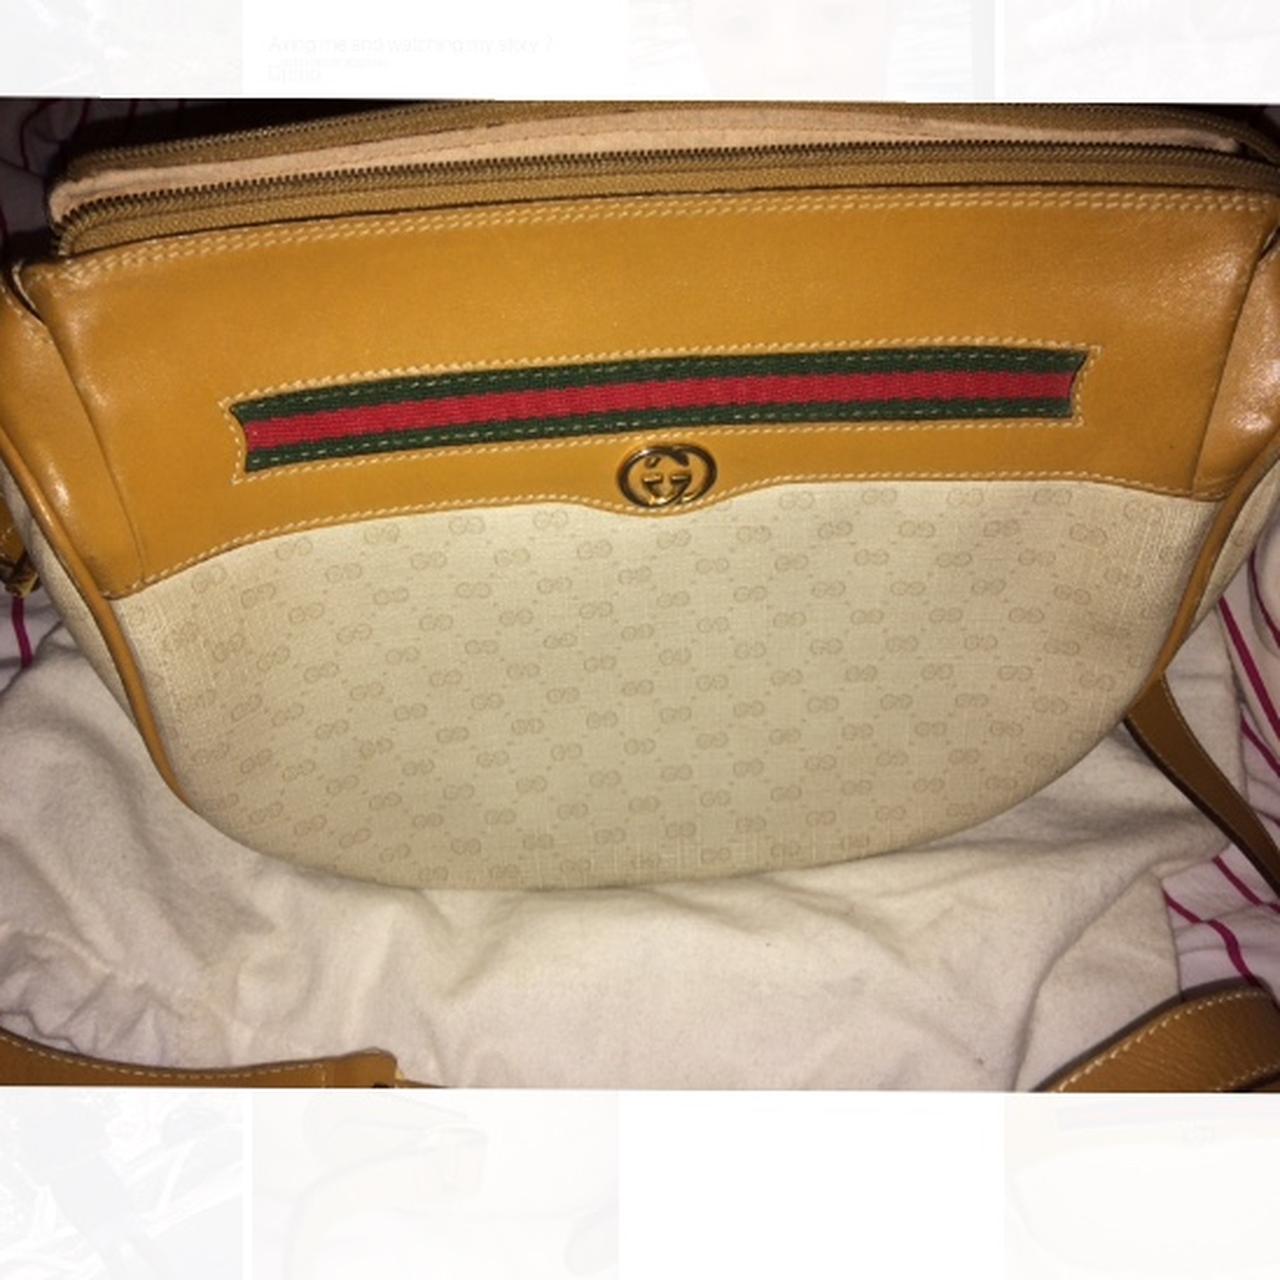 Rare Gucci Bag 